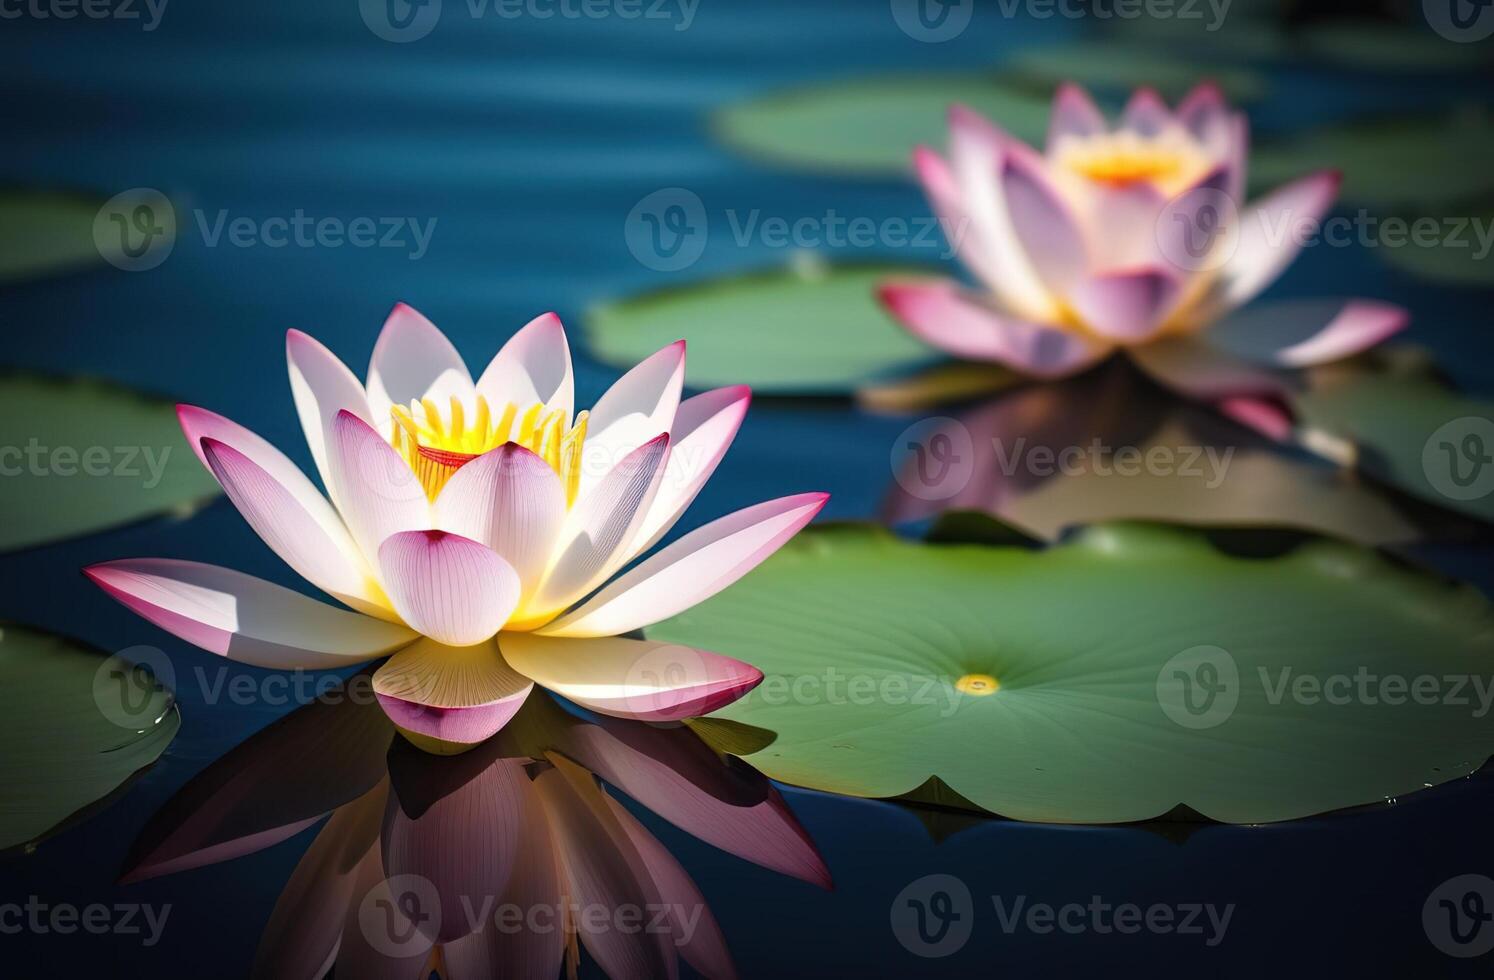 hermosa agua lirio loto flor con hojas en lago agua superficie maditación zen asiático flora botánica Dom ligero verano foto